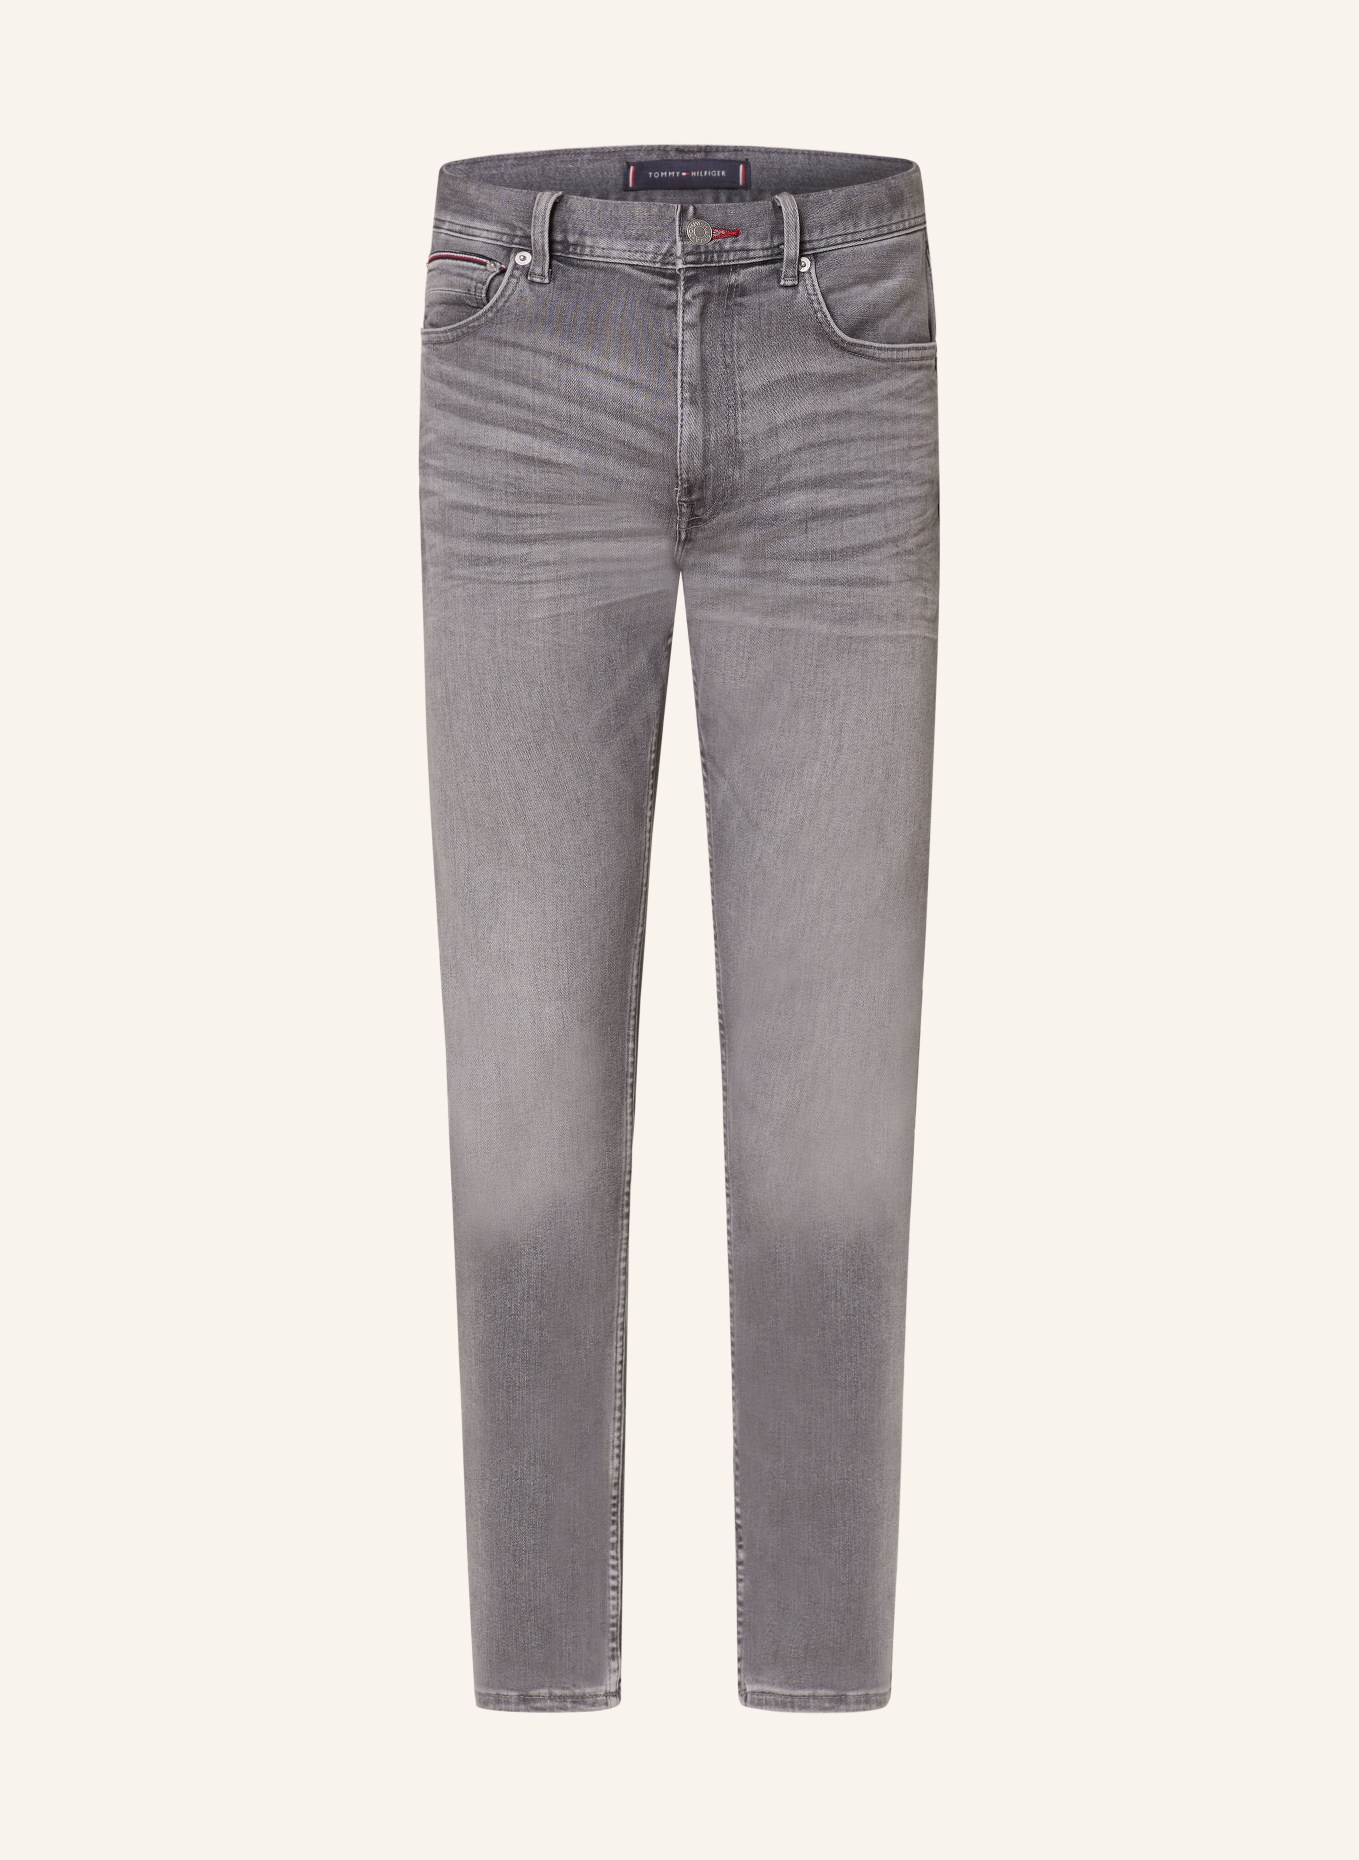 TOMMY HILFIGER Jeans HOUSTON Slim Taper Fit, Farbe: 1B5 Bower Grey (Bild 1)